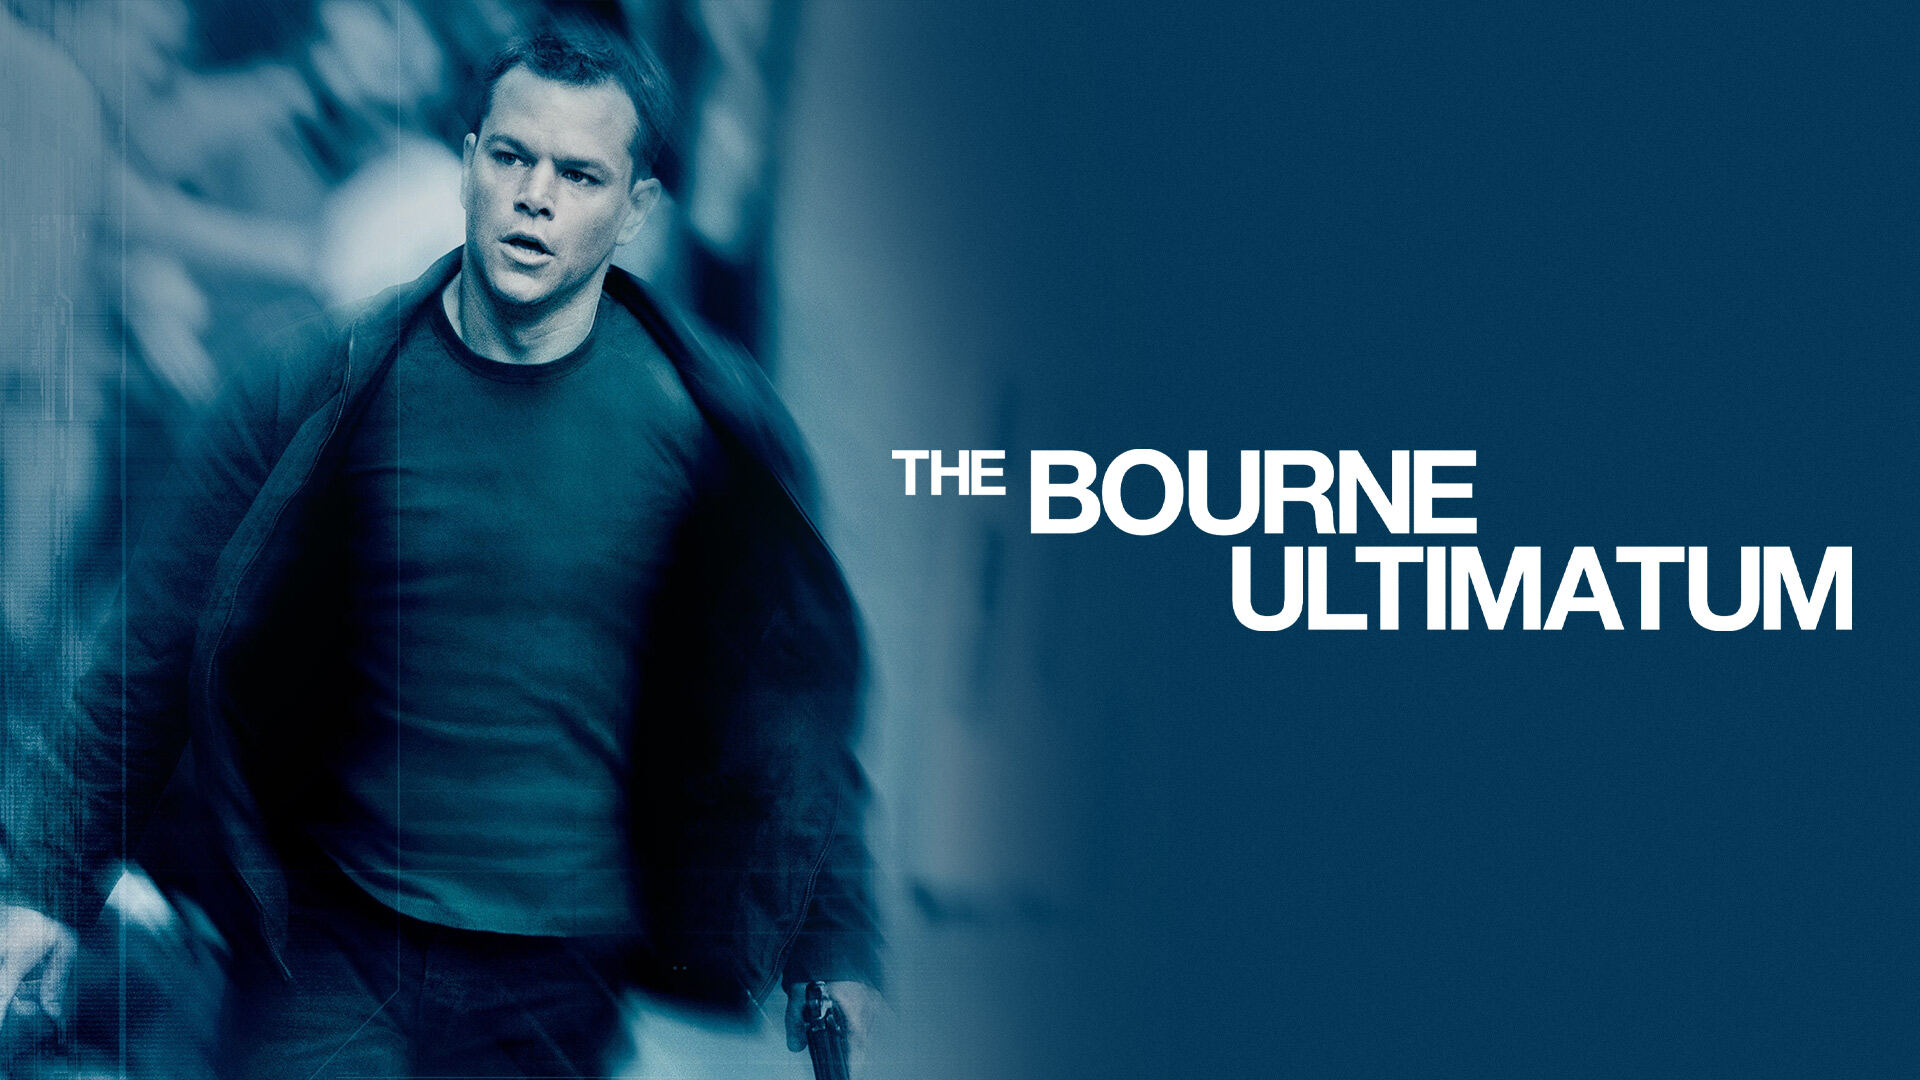 ბორნის ულტიმატუმი / The Bourne Ultimatum